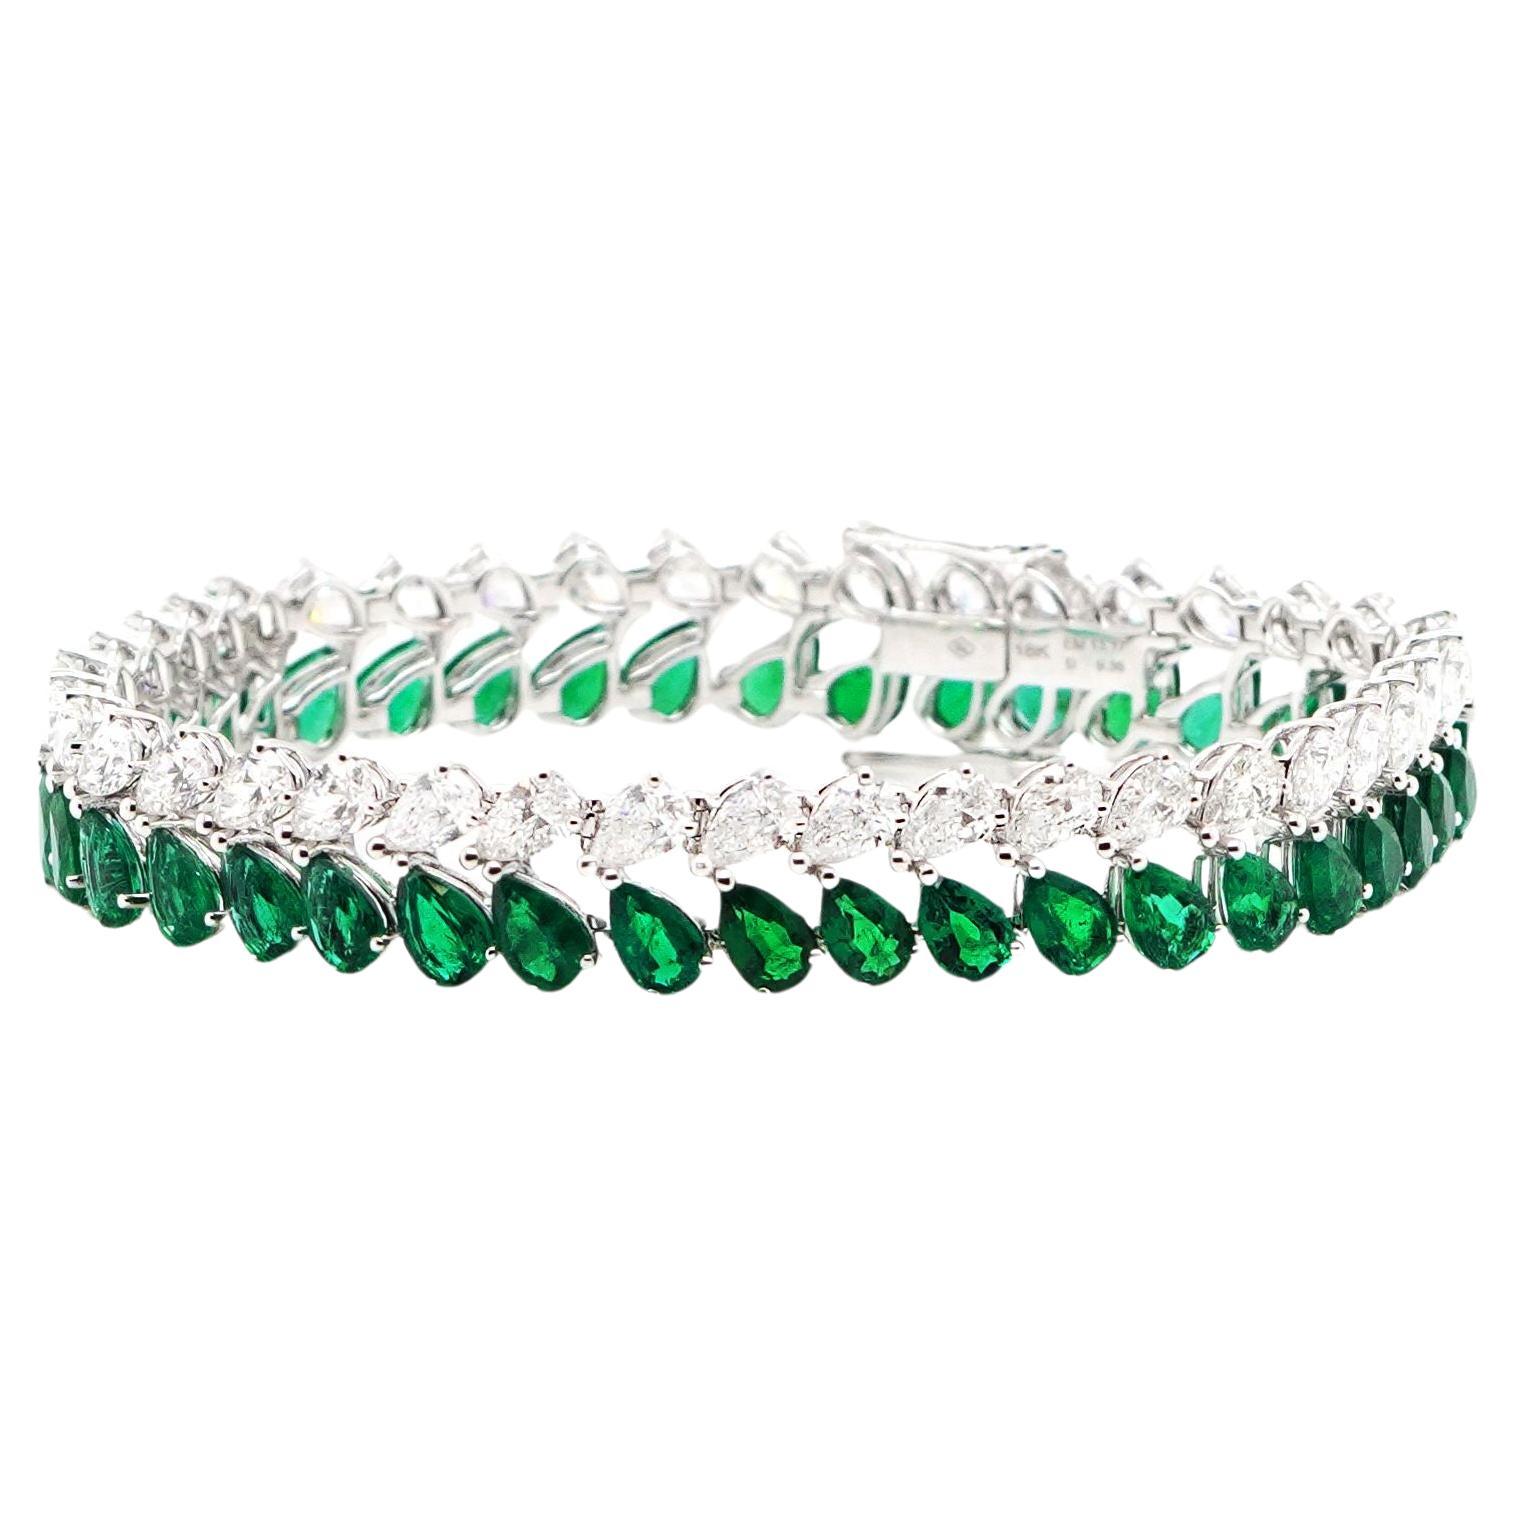 BENJAMIN FINE JEWELRY 13.17 / 9.35 cts Minor Oil Colombian Emerald 18K Bracelet